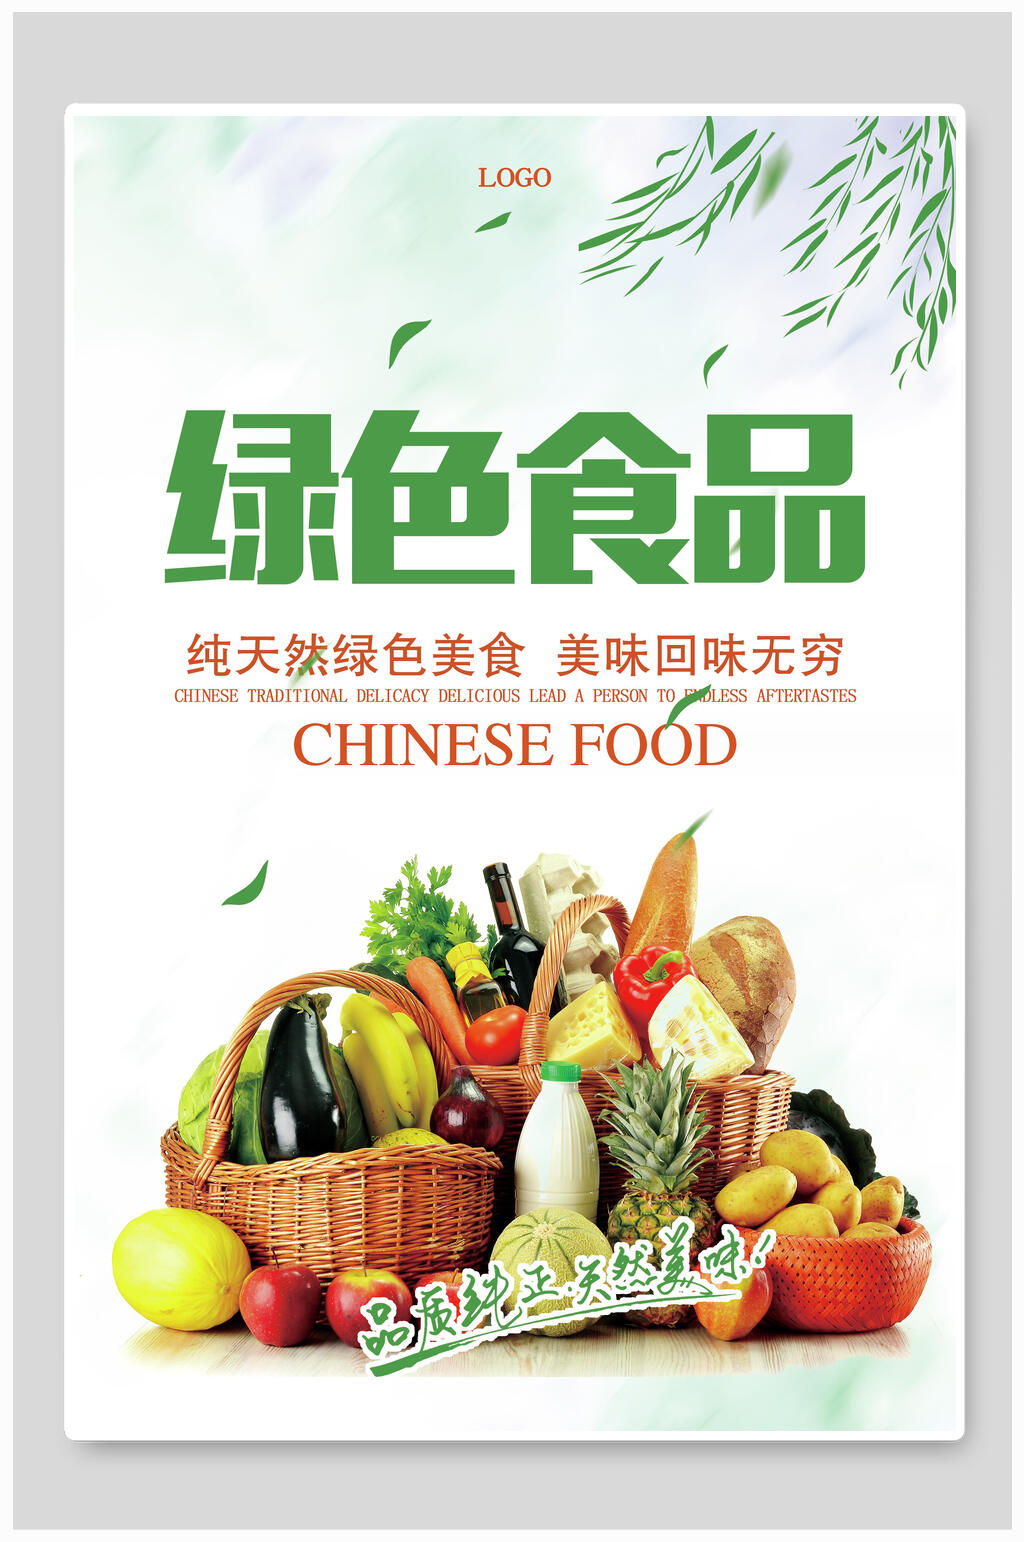 绿色食品海报素材免费下载,本作品是由月月上传的原创平面广告素材